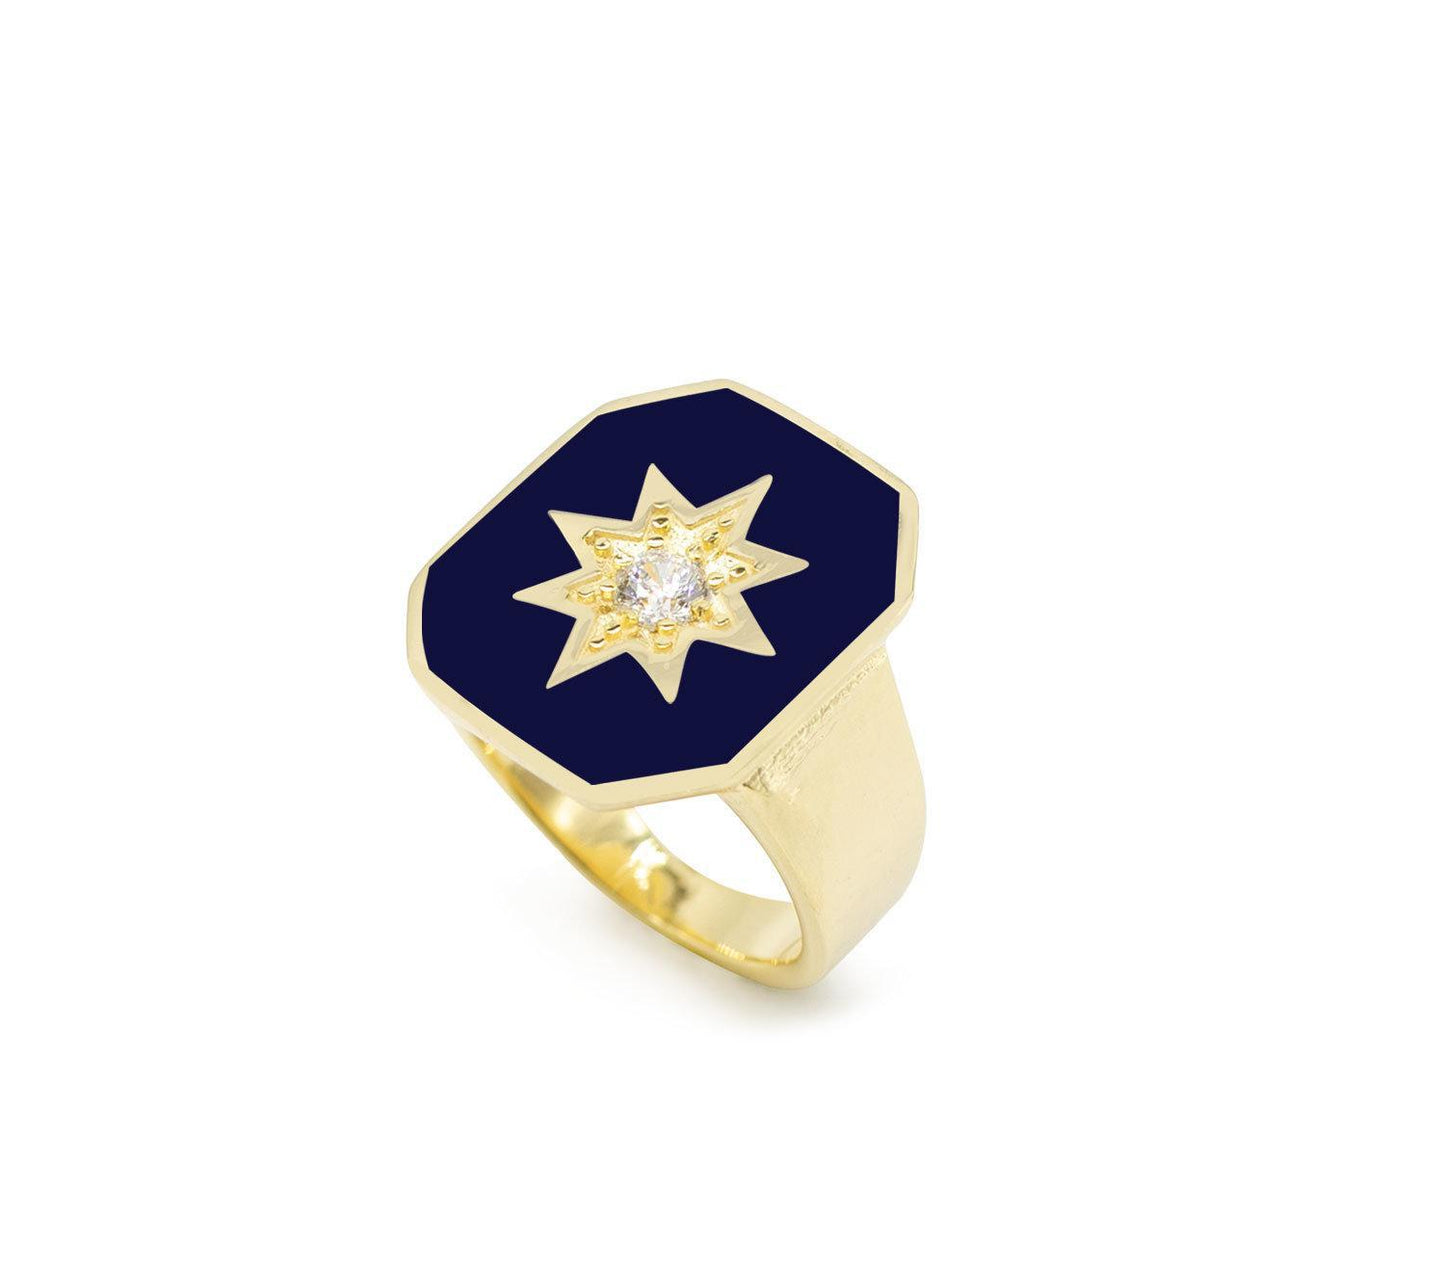 Navy Blue Eneamel Octagonal Ring